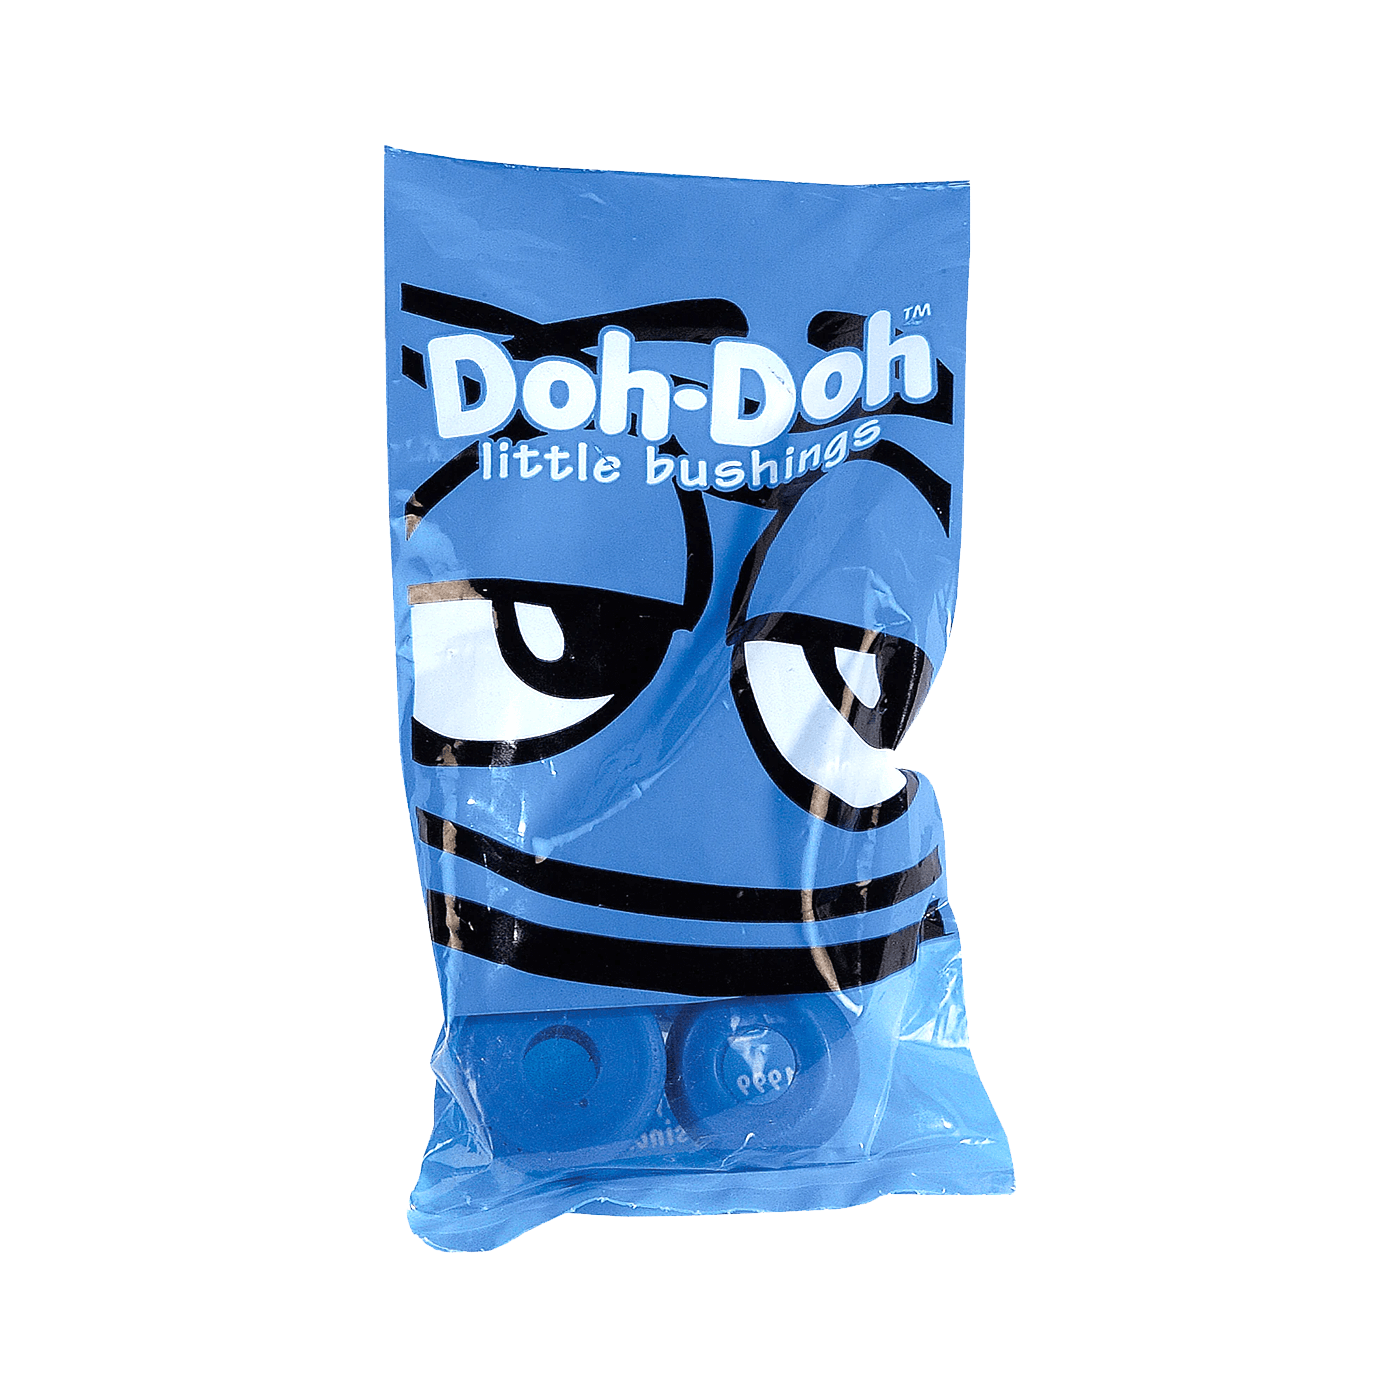 Doh-Doh Bushings